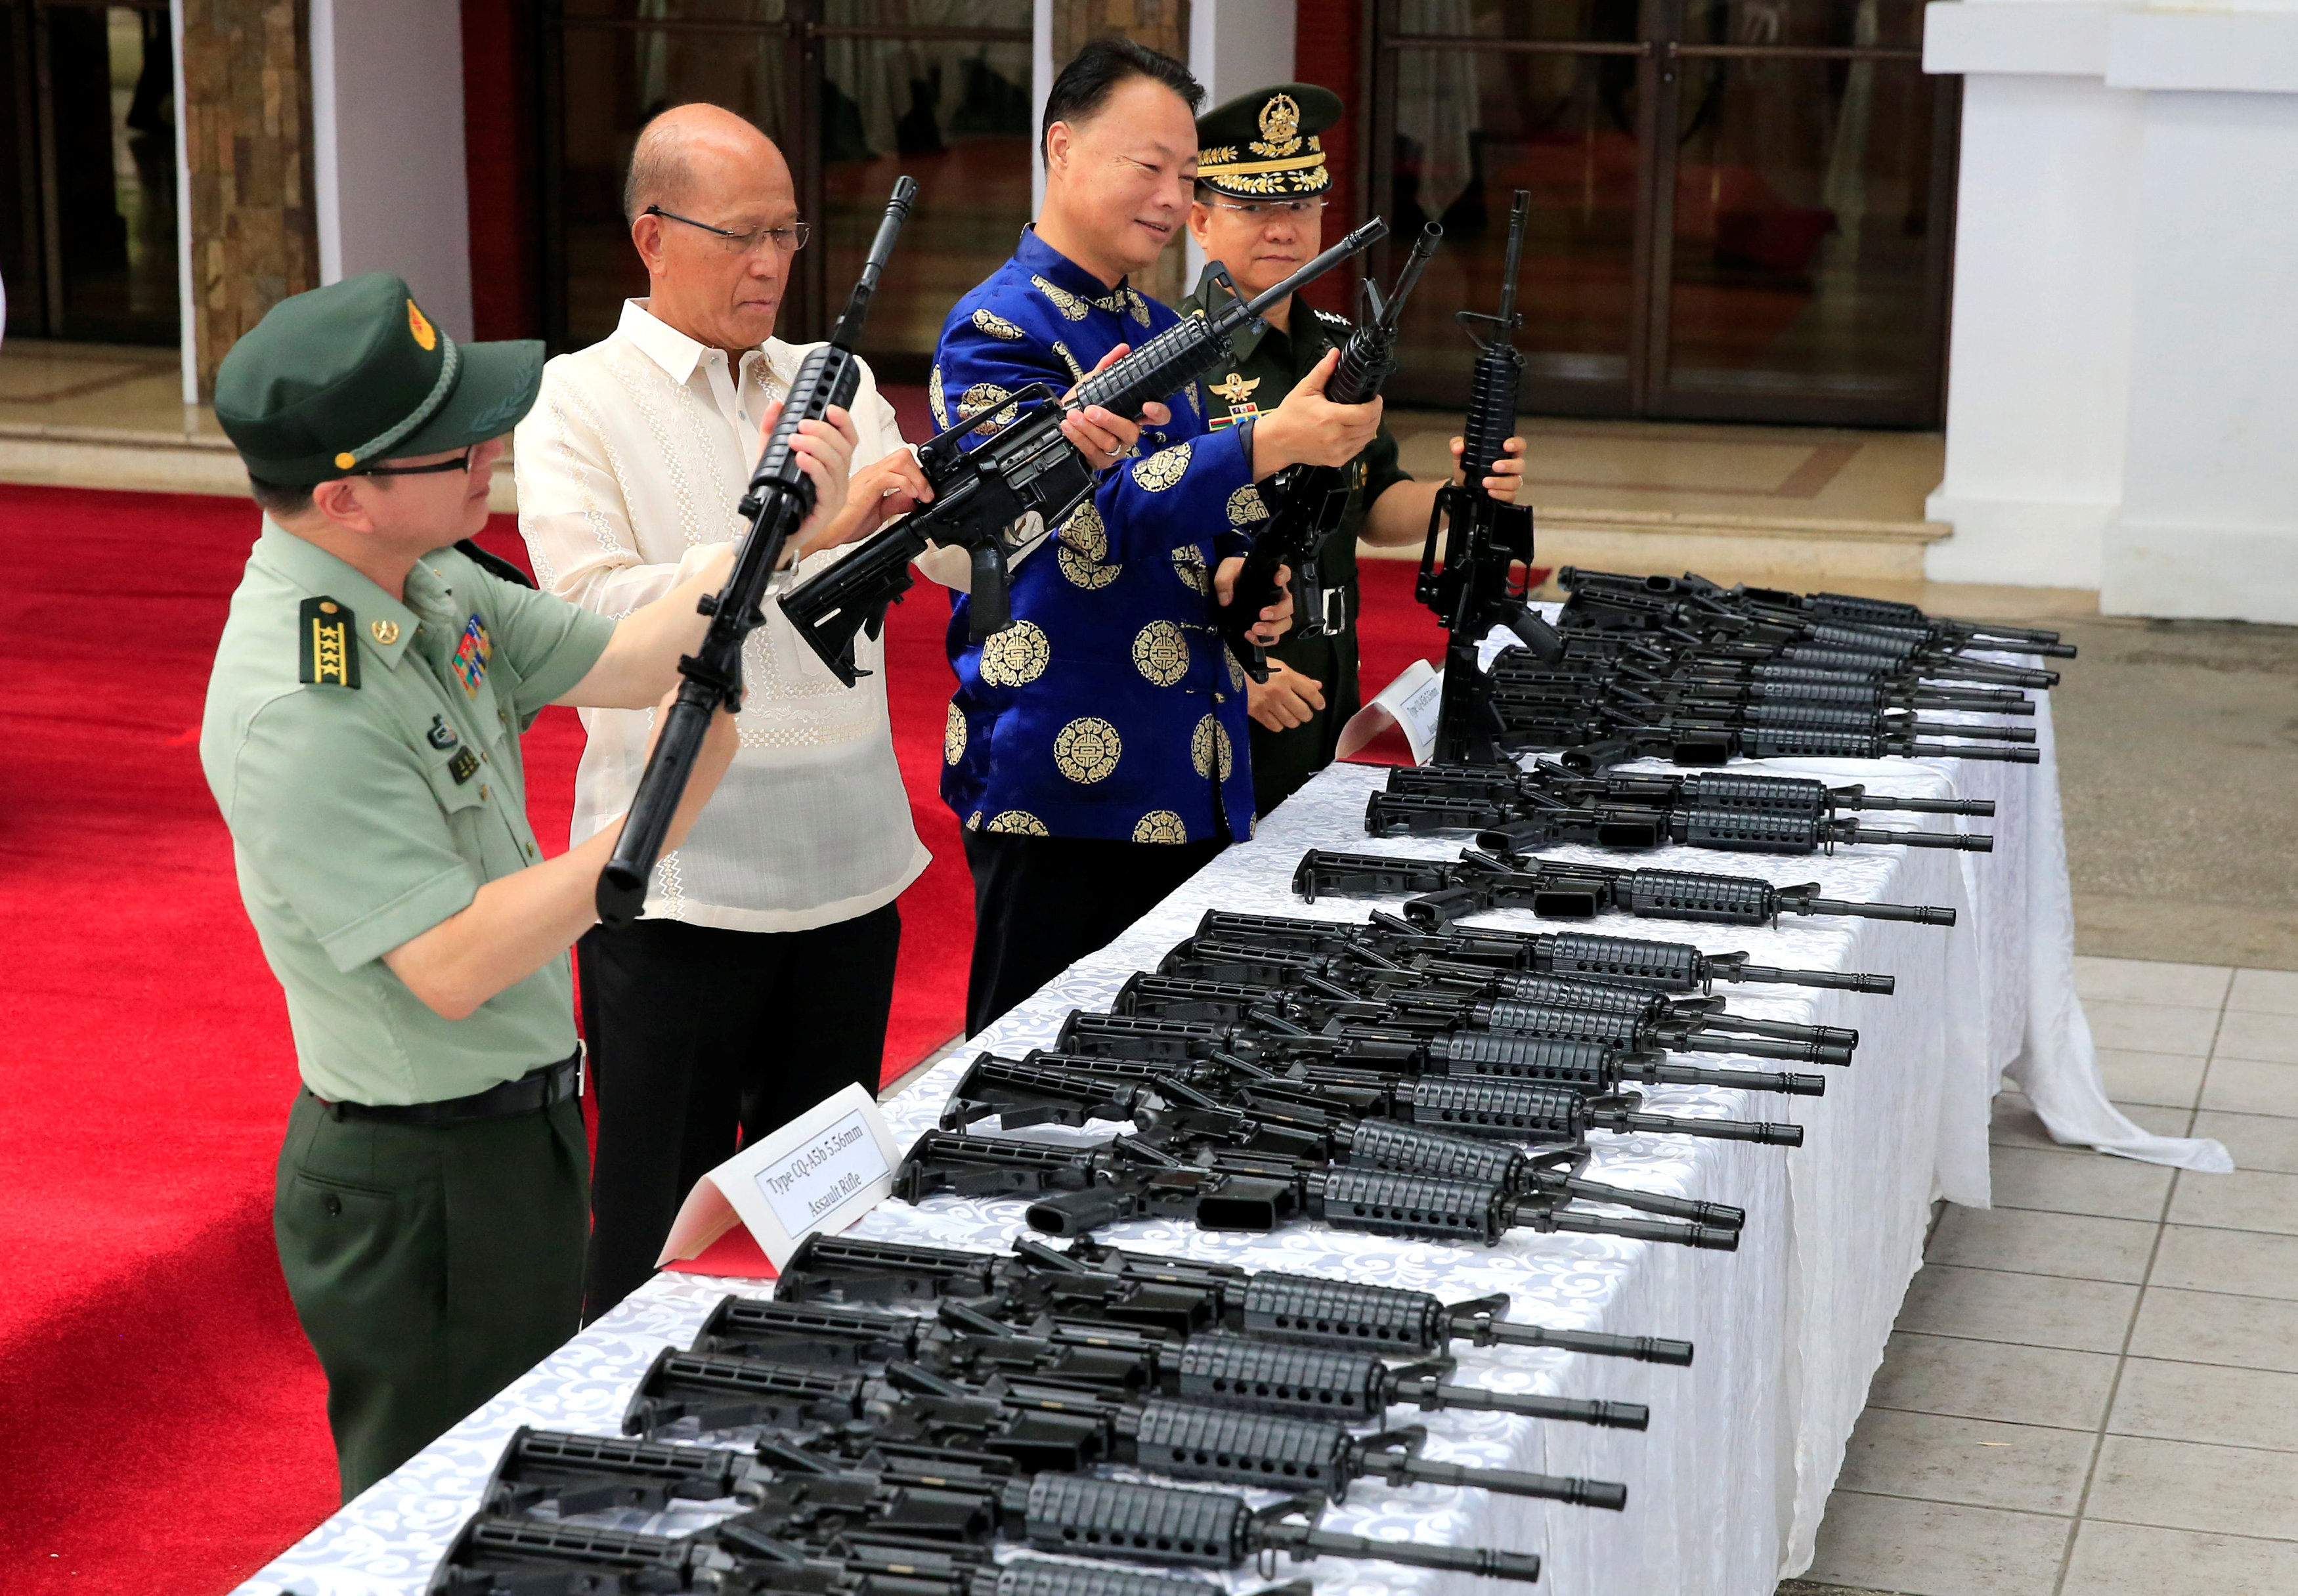 وزير الدفاع اللفلبينى يتفحص الأسلحة النارية الصينية الممنوحة لبلاده